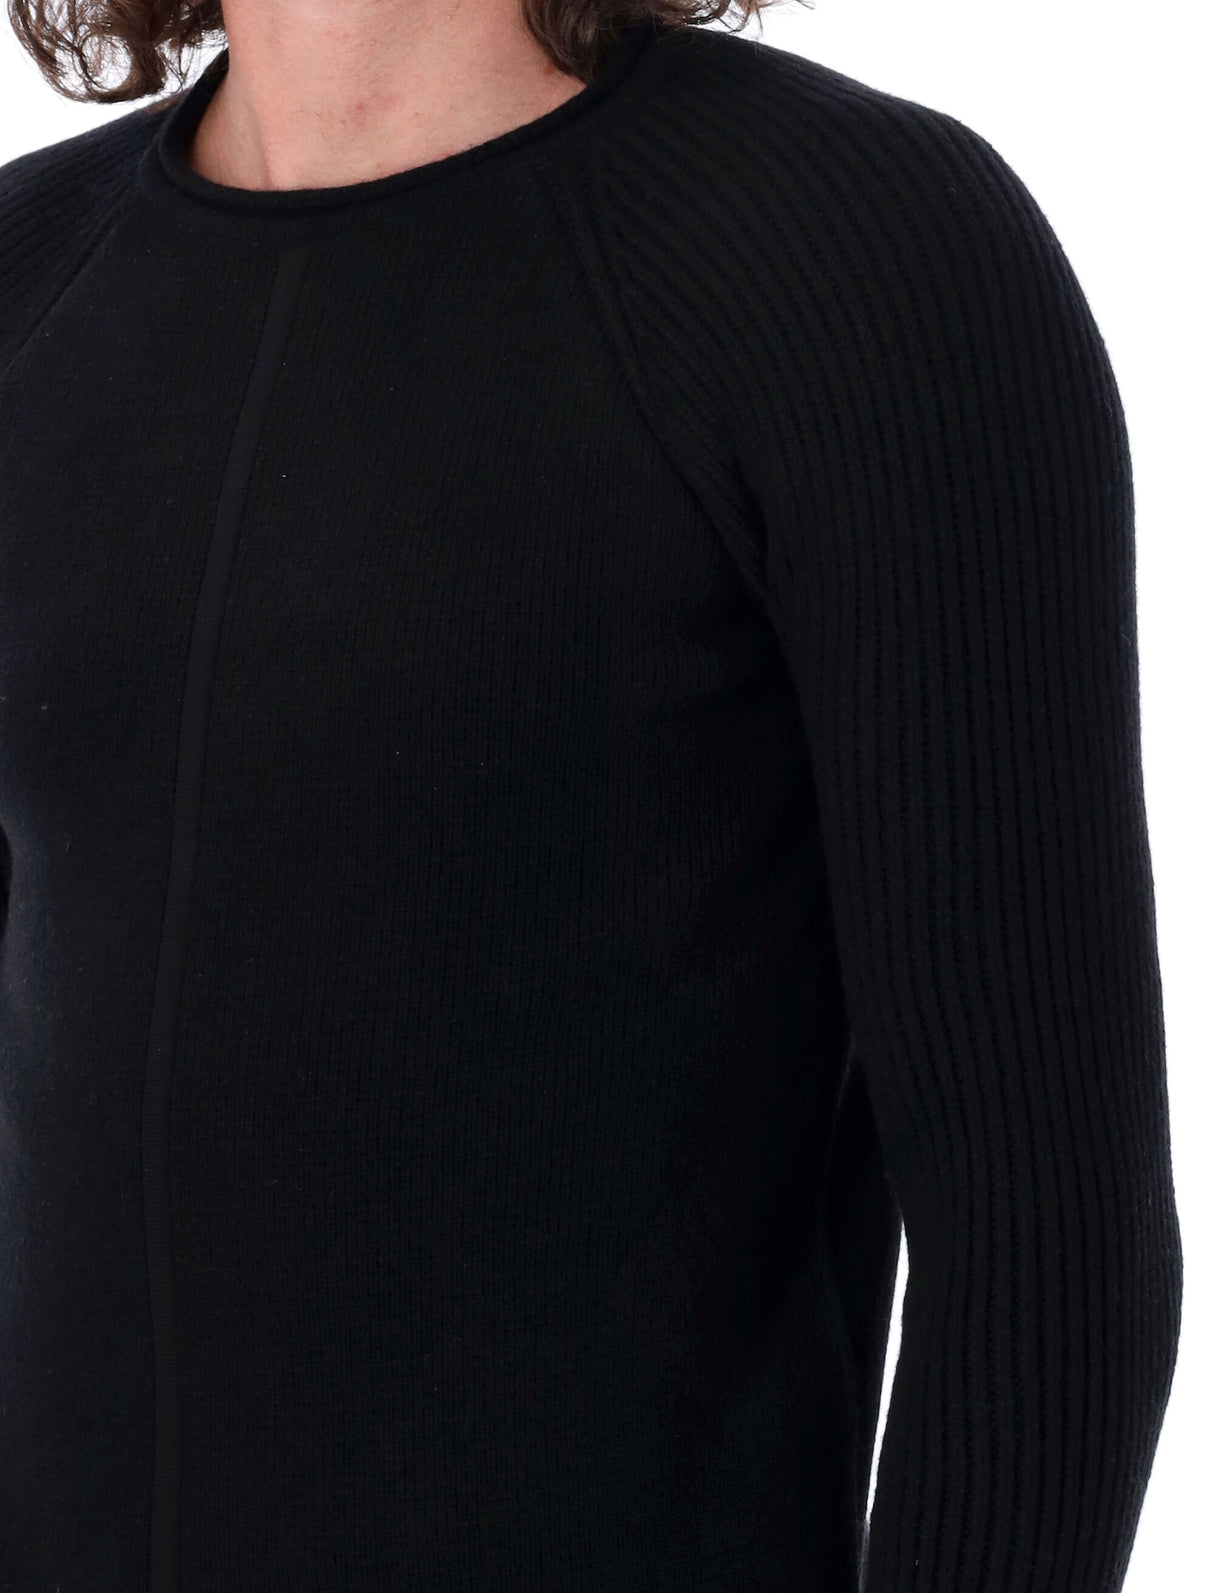 男士黑色圆领毛衣，带有折迭袖口和精致的编织饰边